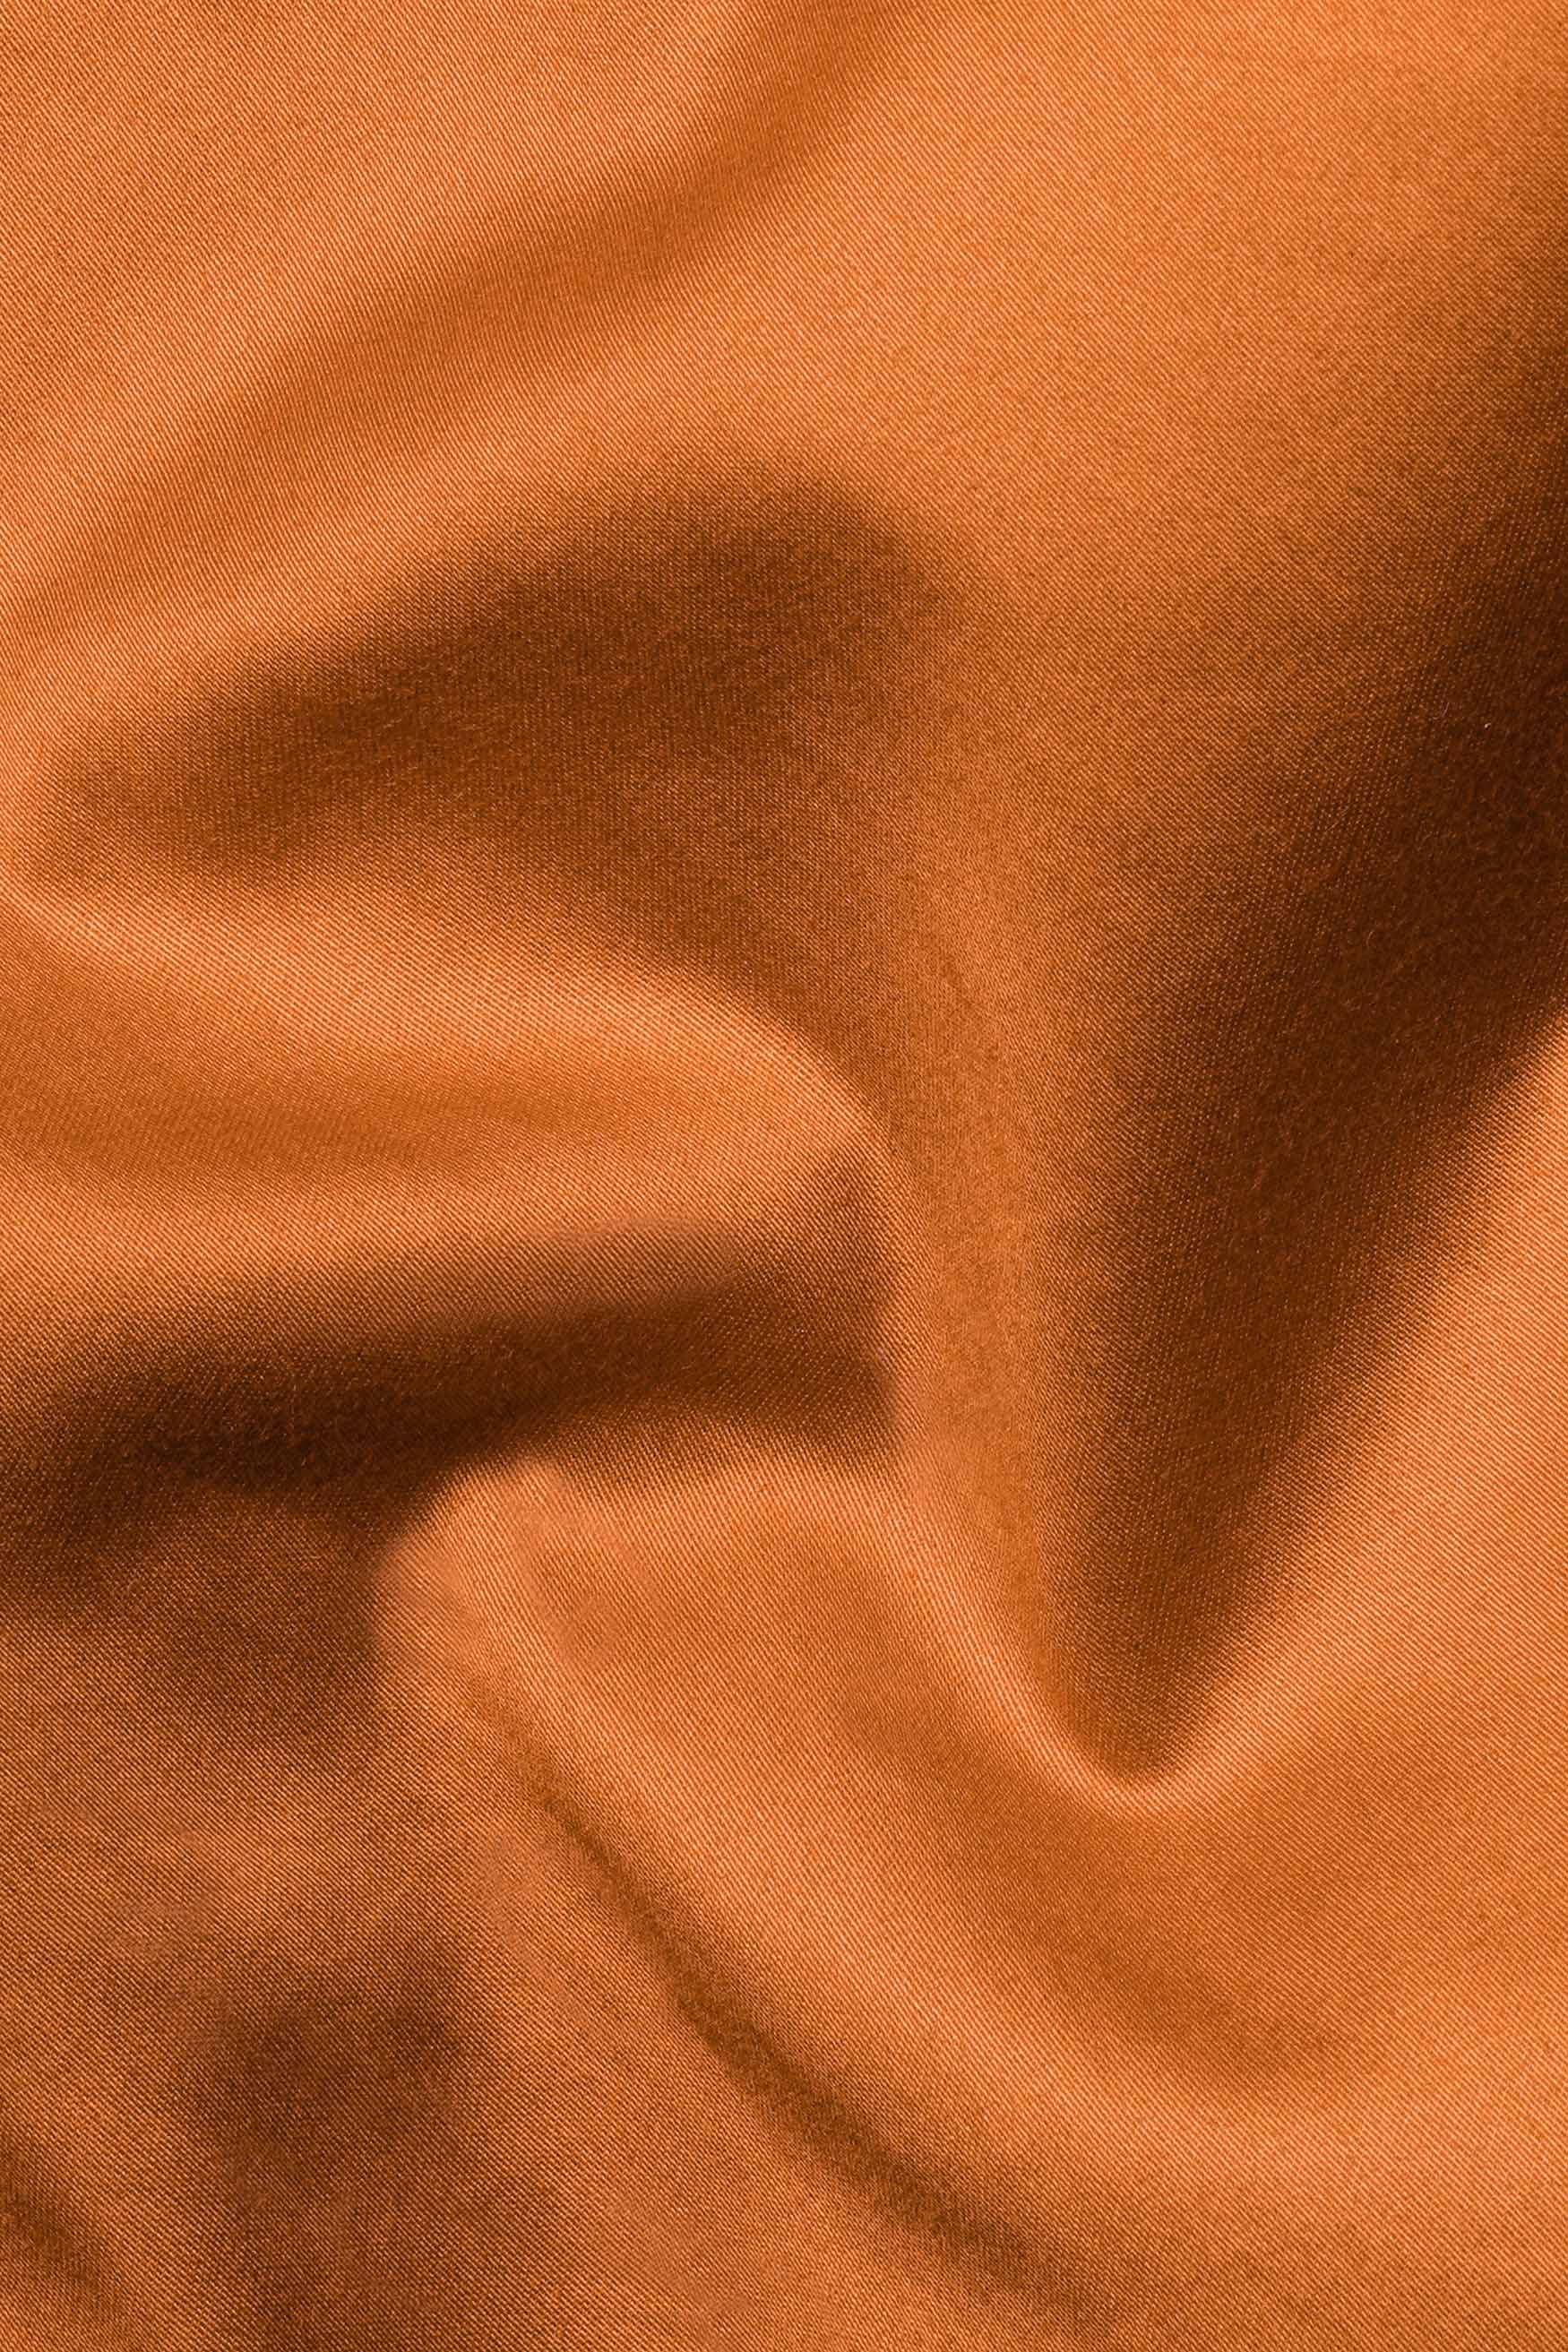 Raw Sienna Orange Subtle Sheen Super Soft Premium Cotton Mandarin Shirt